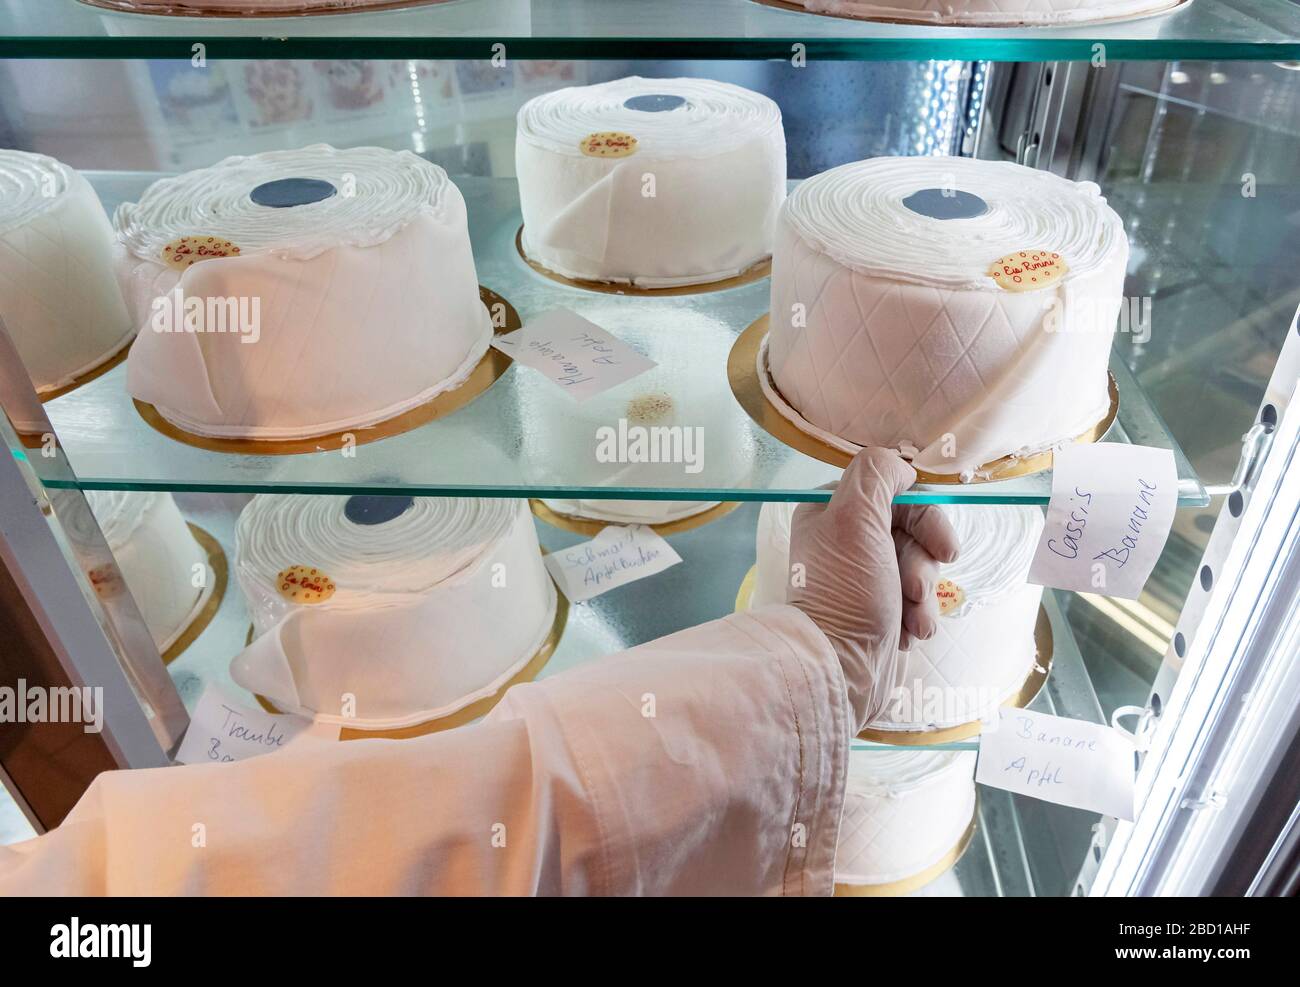 06 avril 2020, Bade-Wuerttemberg, Rastatt: Dans le salon de la glace Pino  Cimino, les gâteaux de crème glacée sont présentés sous forme de rouleaux  de papier toilette. Les gâteaux ne peuvent être